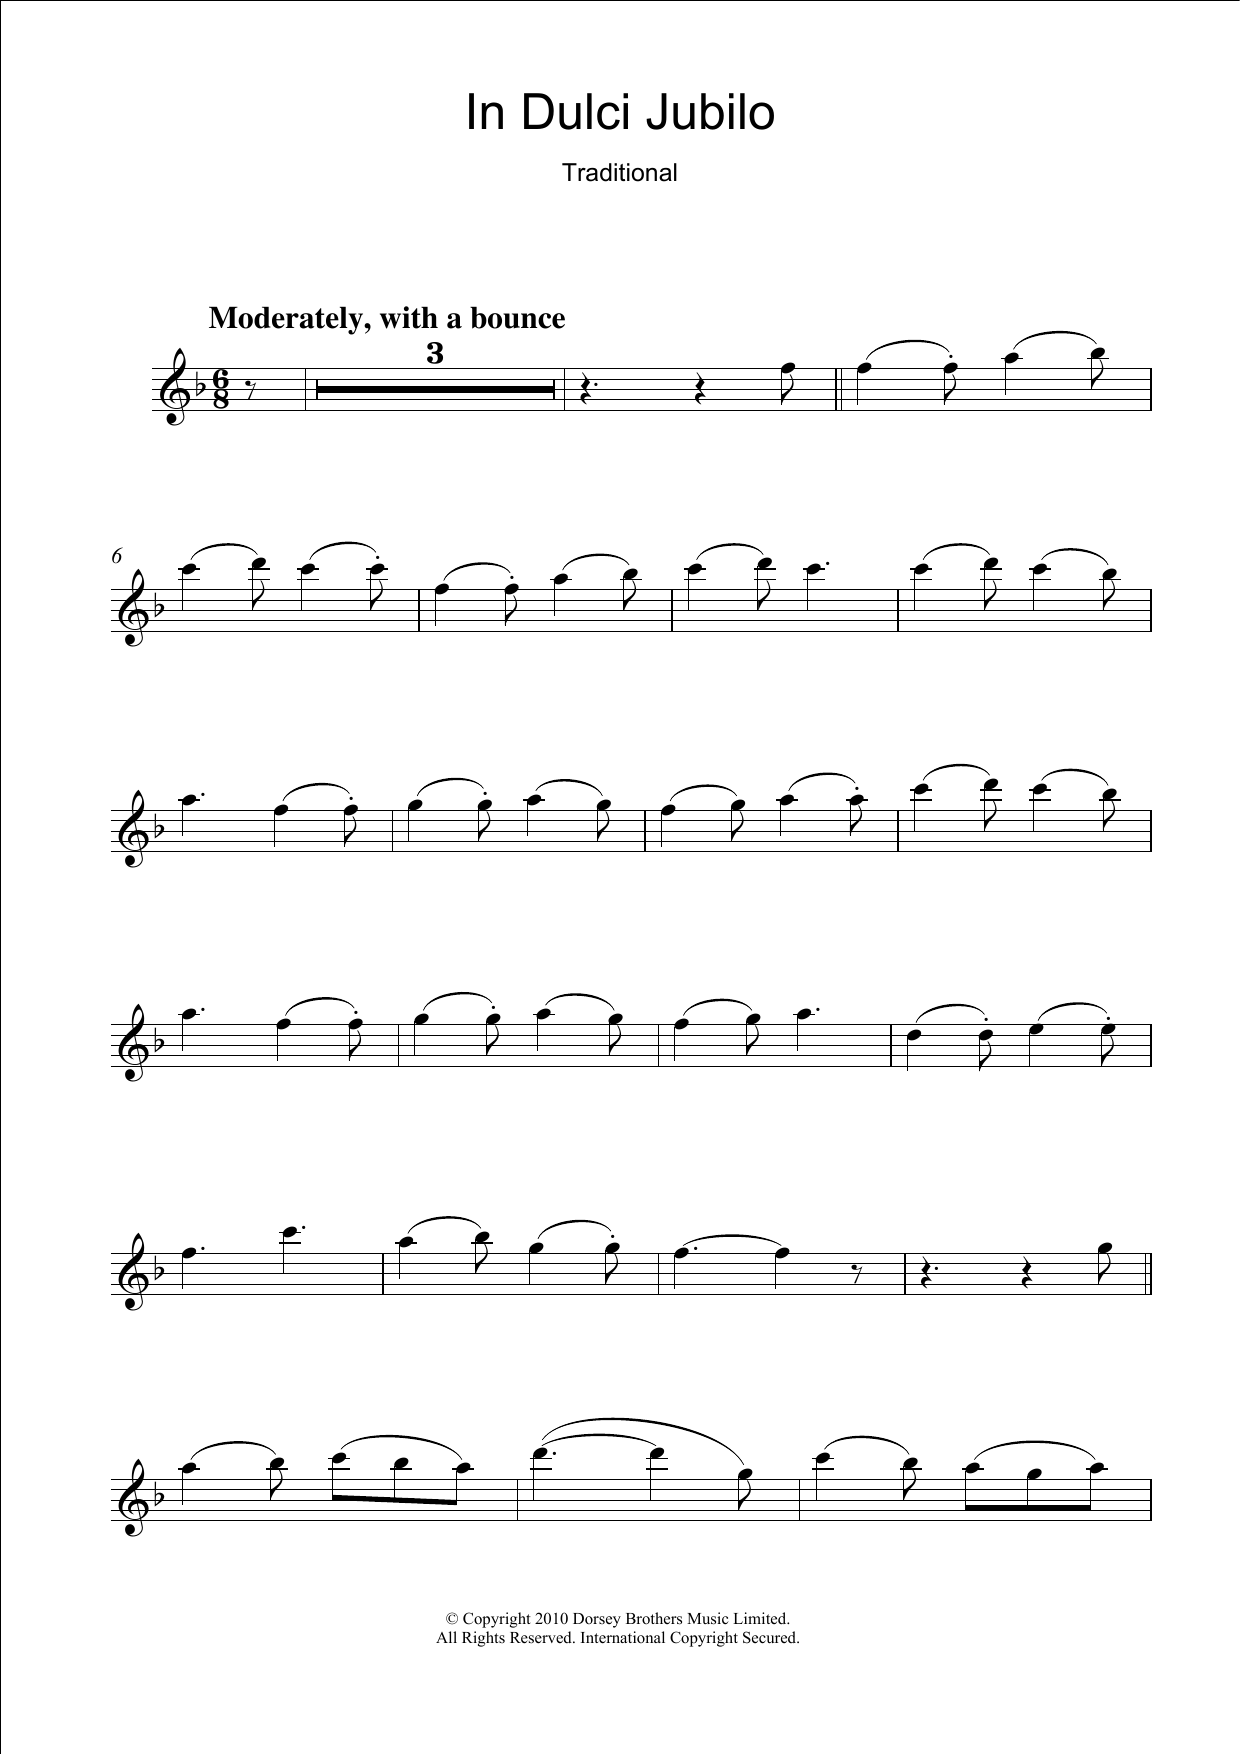 Traditional Carol In Dulci Jubilo Sheet Music Notes & Chords for Guitar Chords/Lyrics - Download or Print PDF